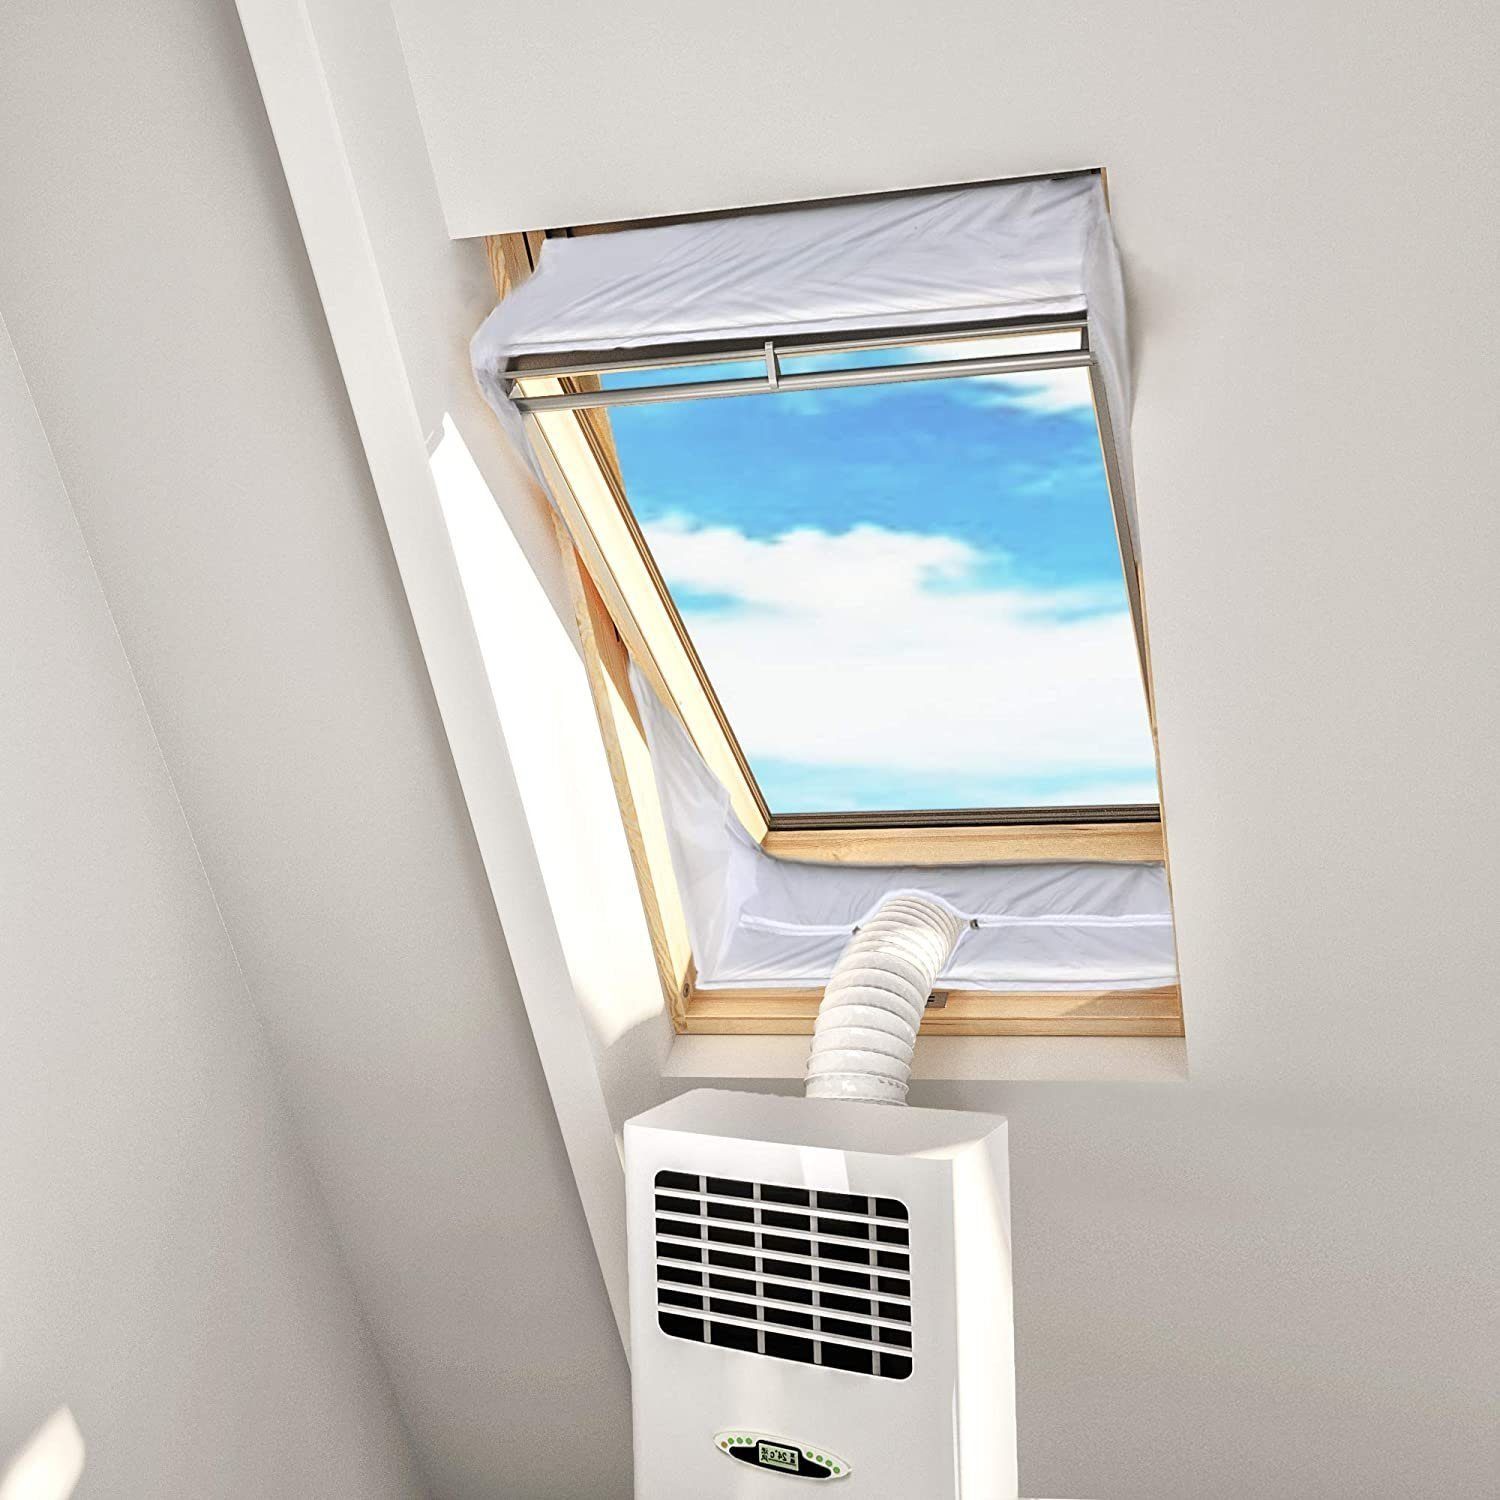 Fensterstopper Fensterabdichtung für Mobile autolock Fensterkitt Klimageräte Set, Dachfenster